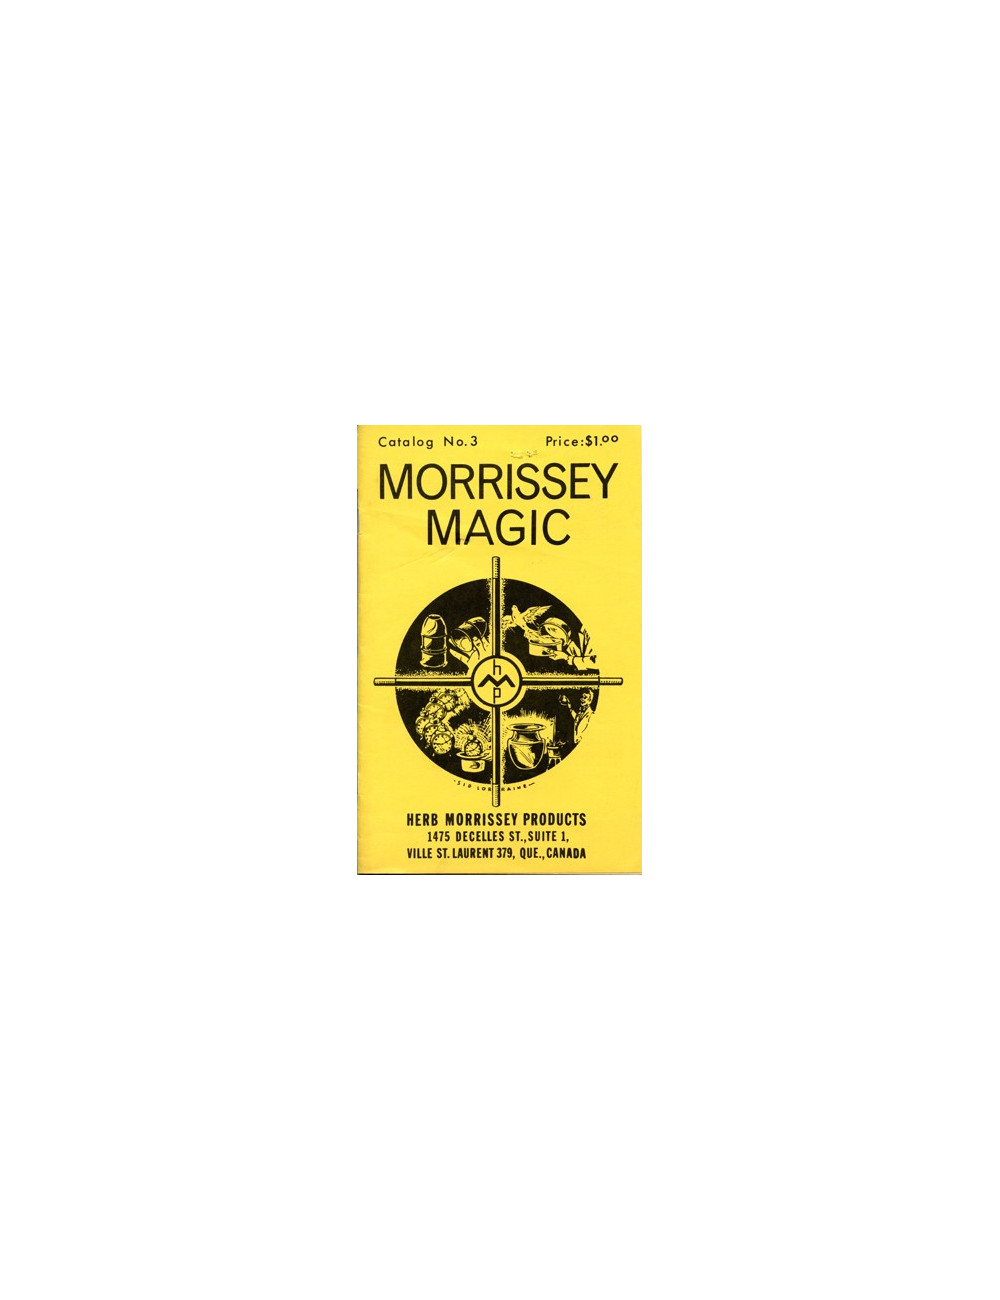 MORISSEY MAGIC – CATALOG No. 3